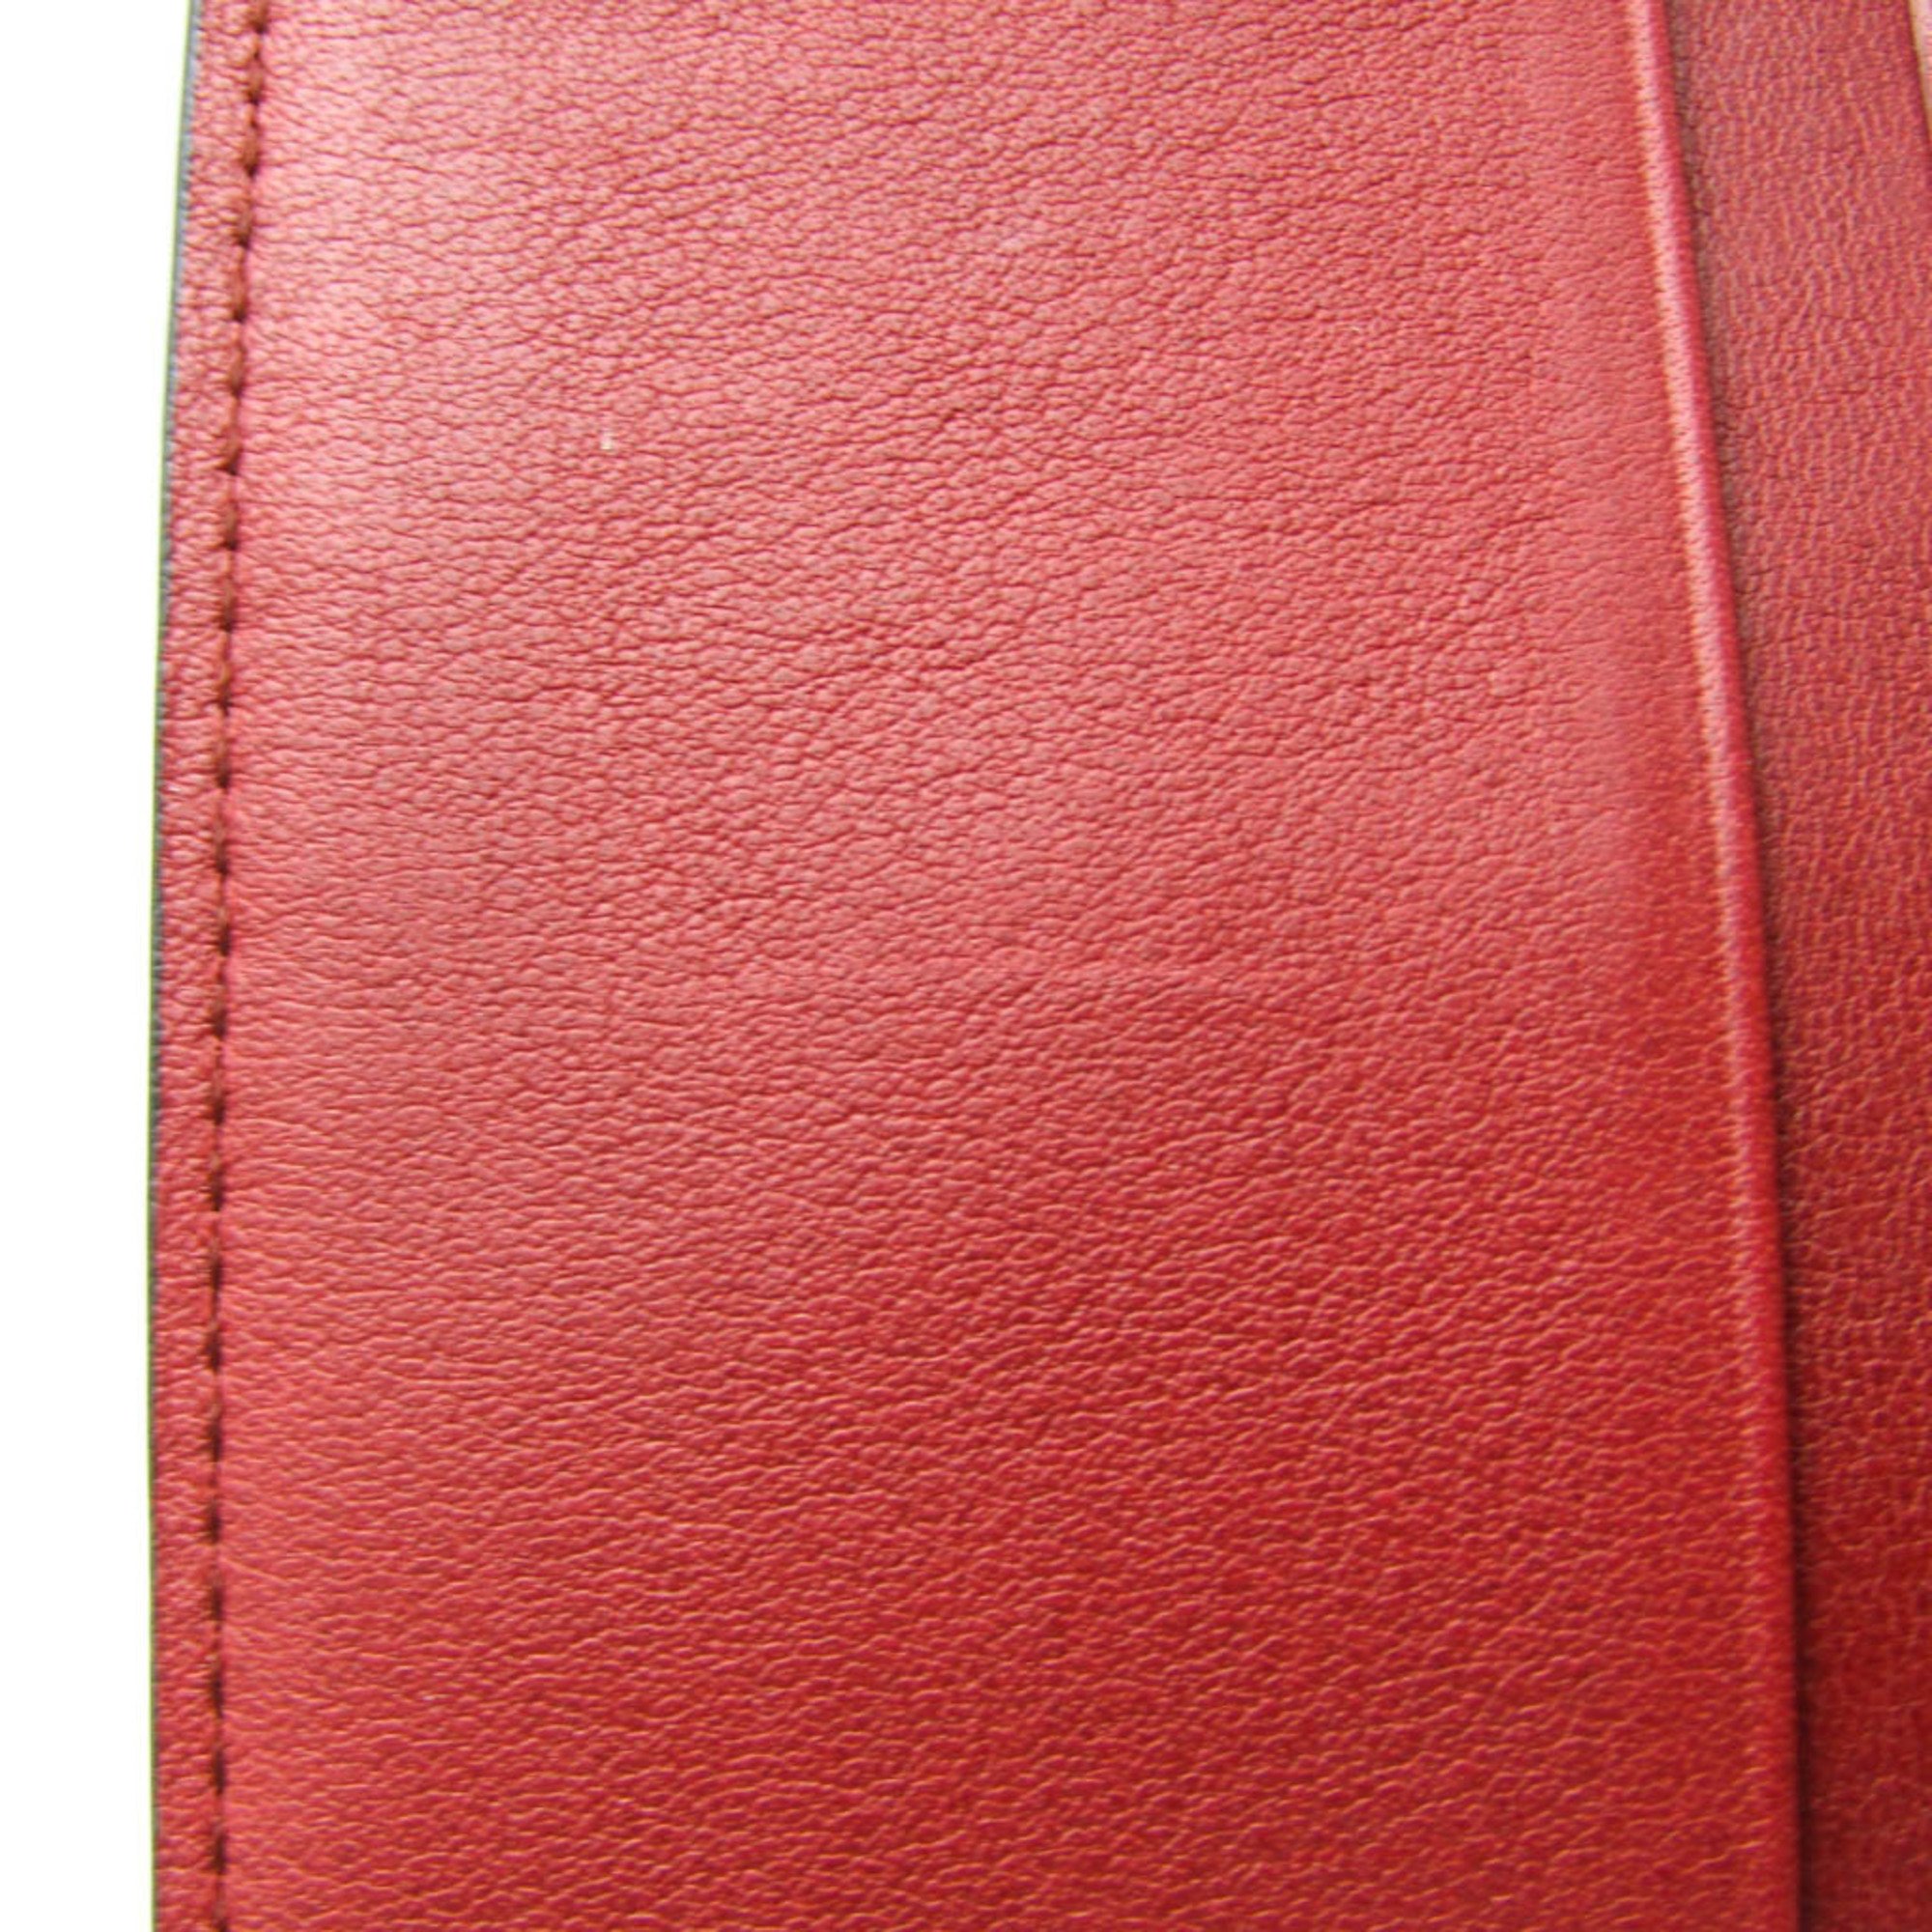 Loewe C660Z41X01 Women's Leather Wallet (bi-fold) Bordeaux,Brown